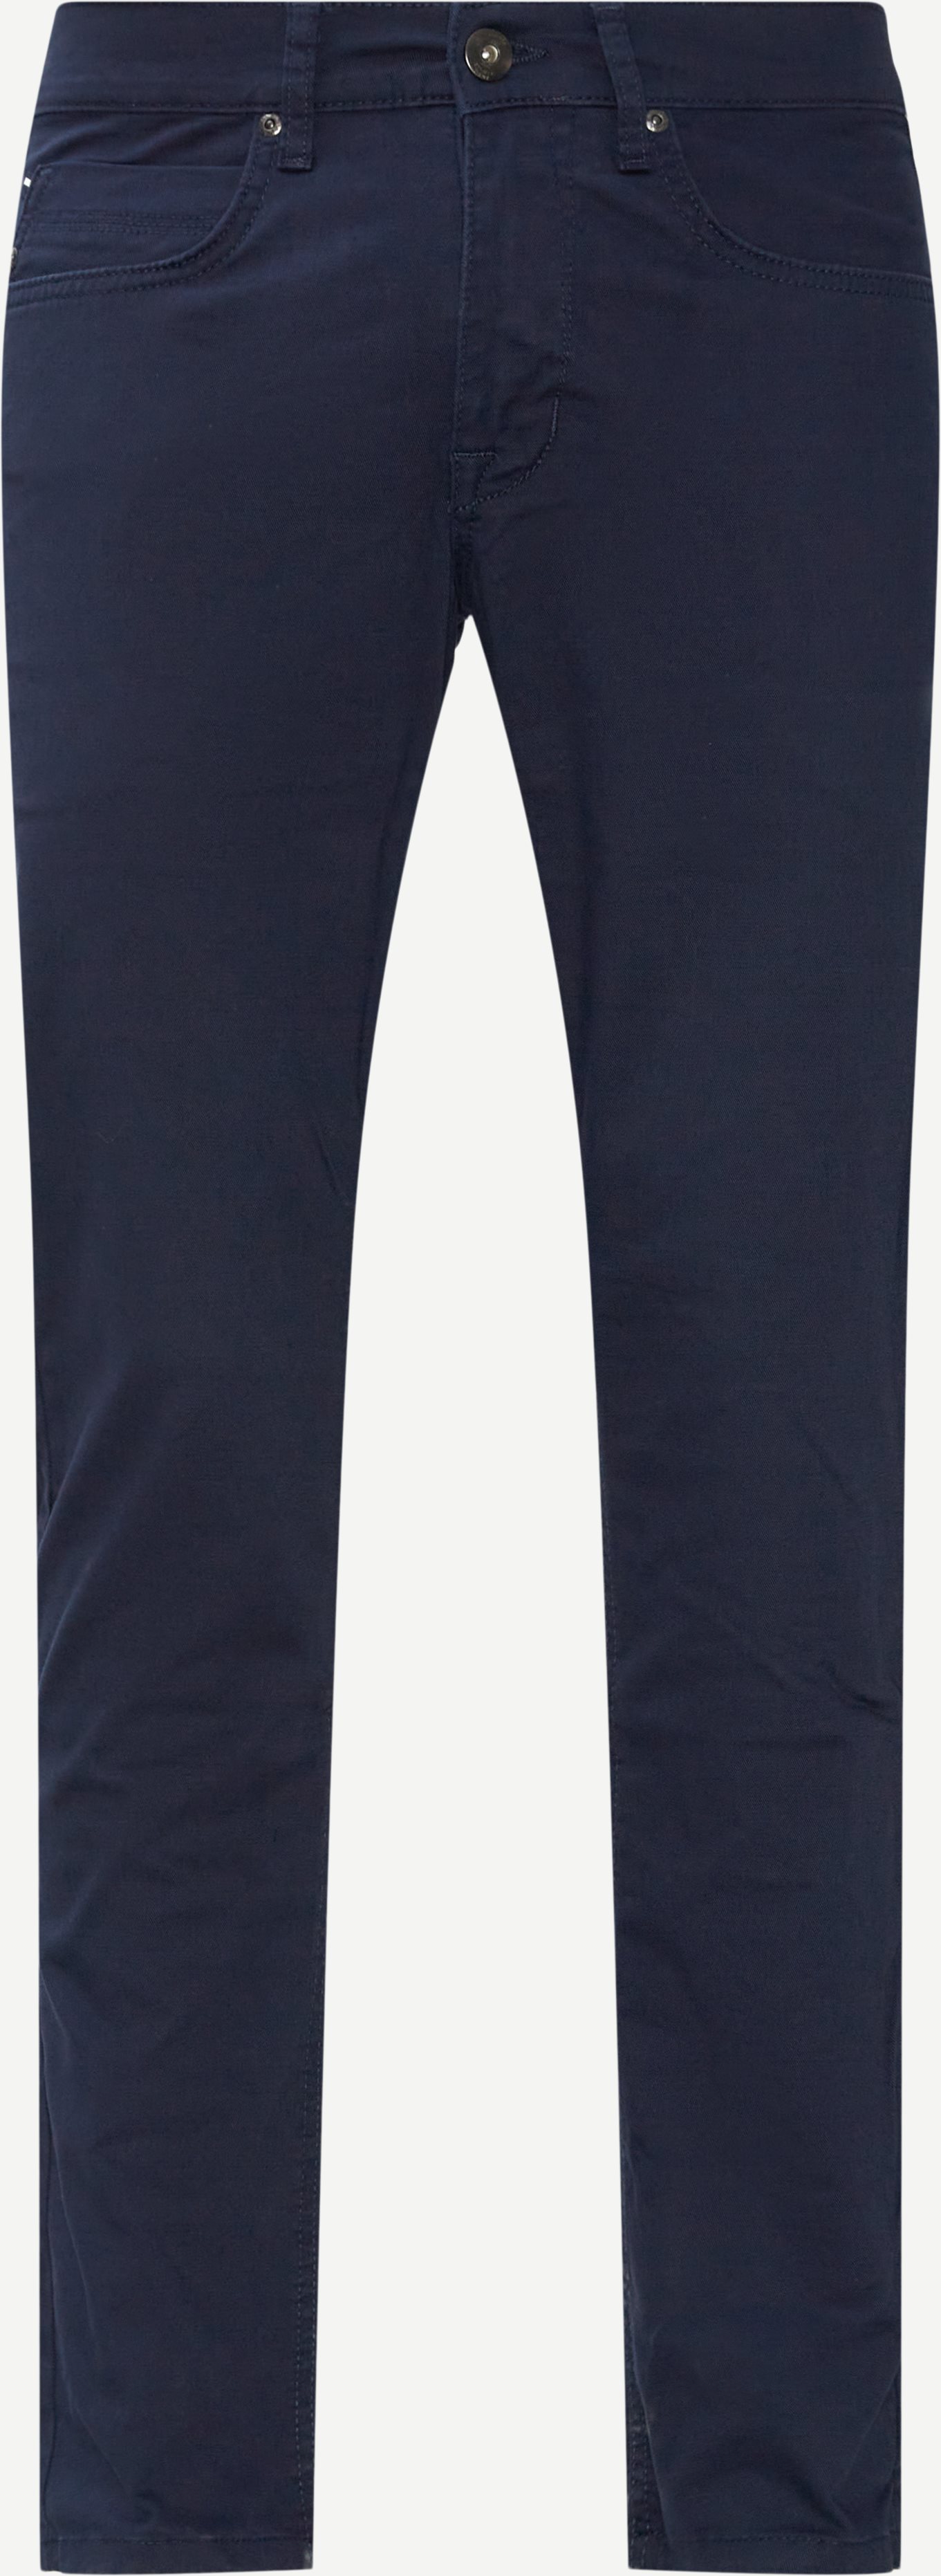 Signal Jeans 11022 frankie TWILL Blue